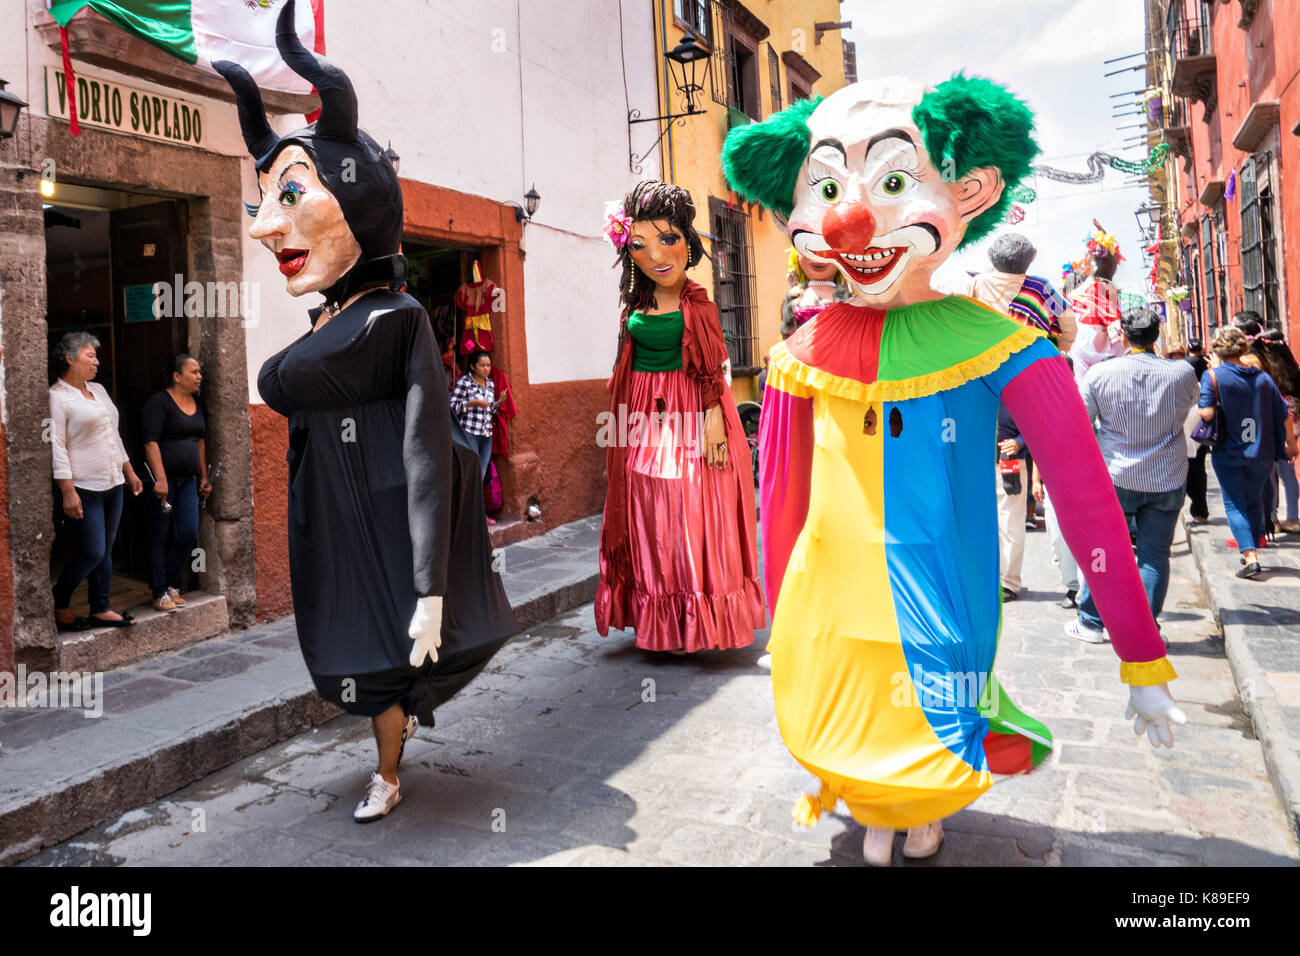 Riesige Pappmaché-Puppen namens Mojigangas tanzen in den Straßen während einer Kinderparade, die die Feierlichkeiten zum mexikanischen Unabhängigkeitstag am 17. September 2017 in San Miguel de Allende, Mexiko, feiert. Stockfoto